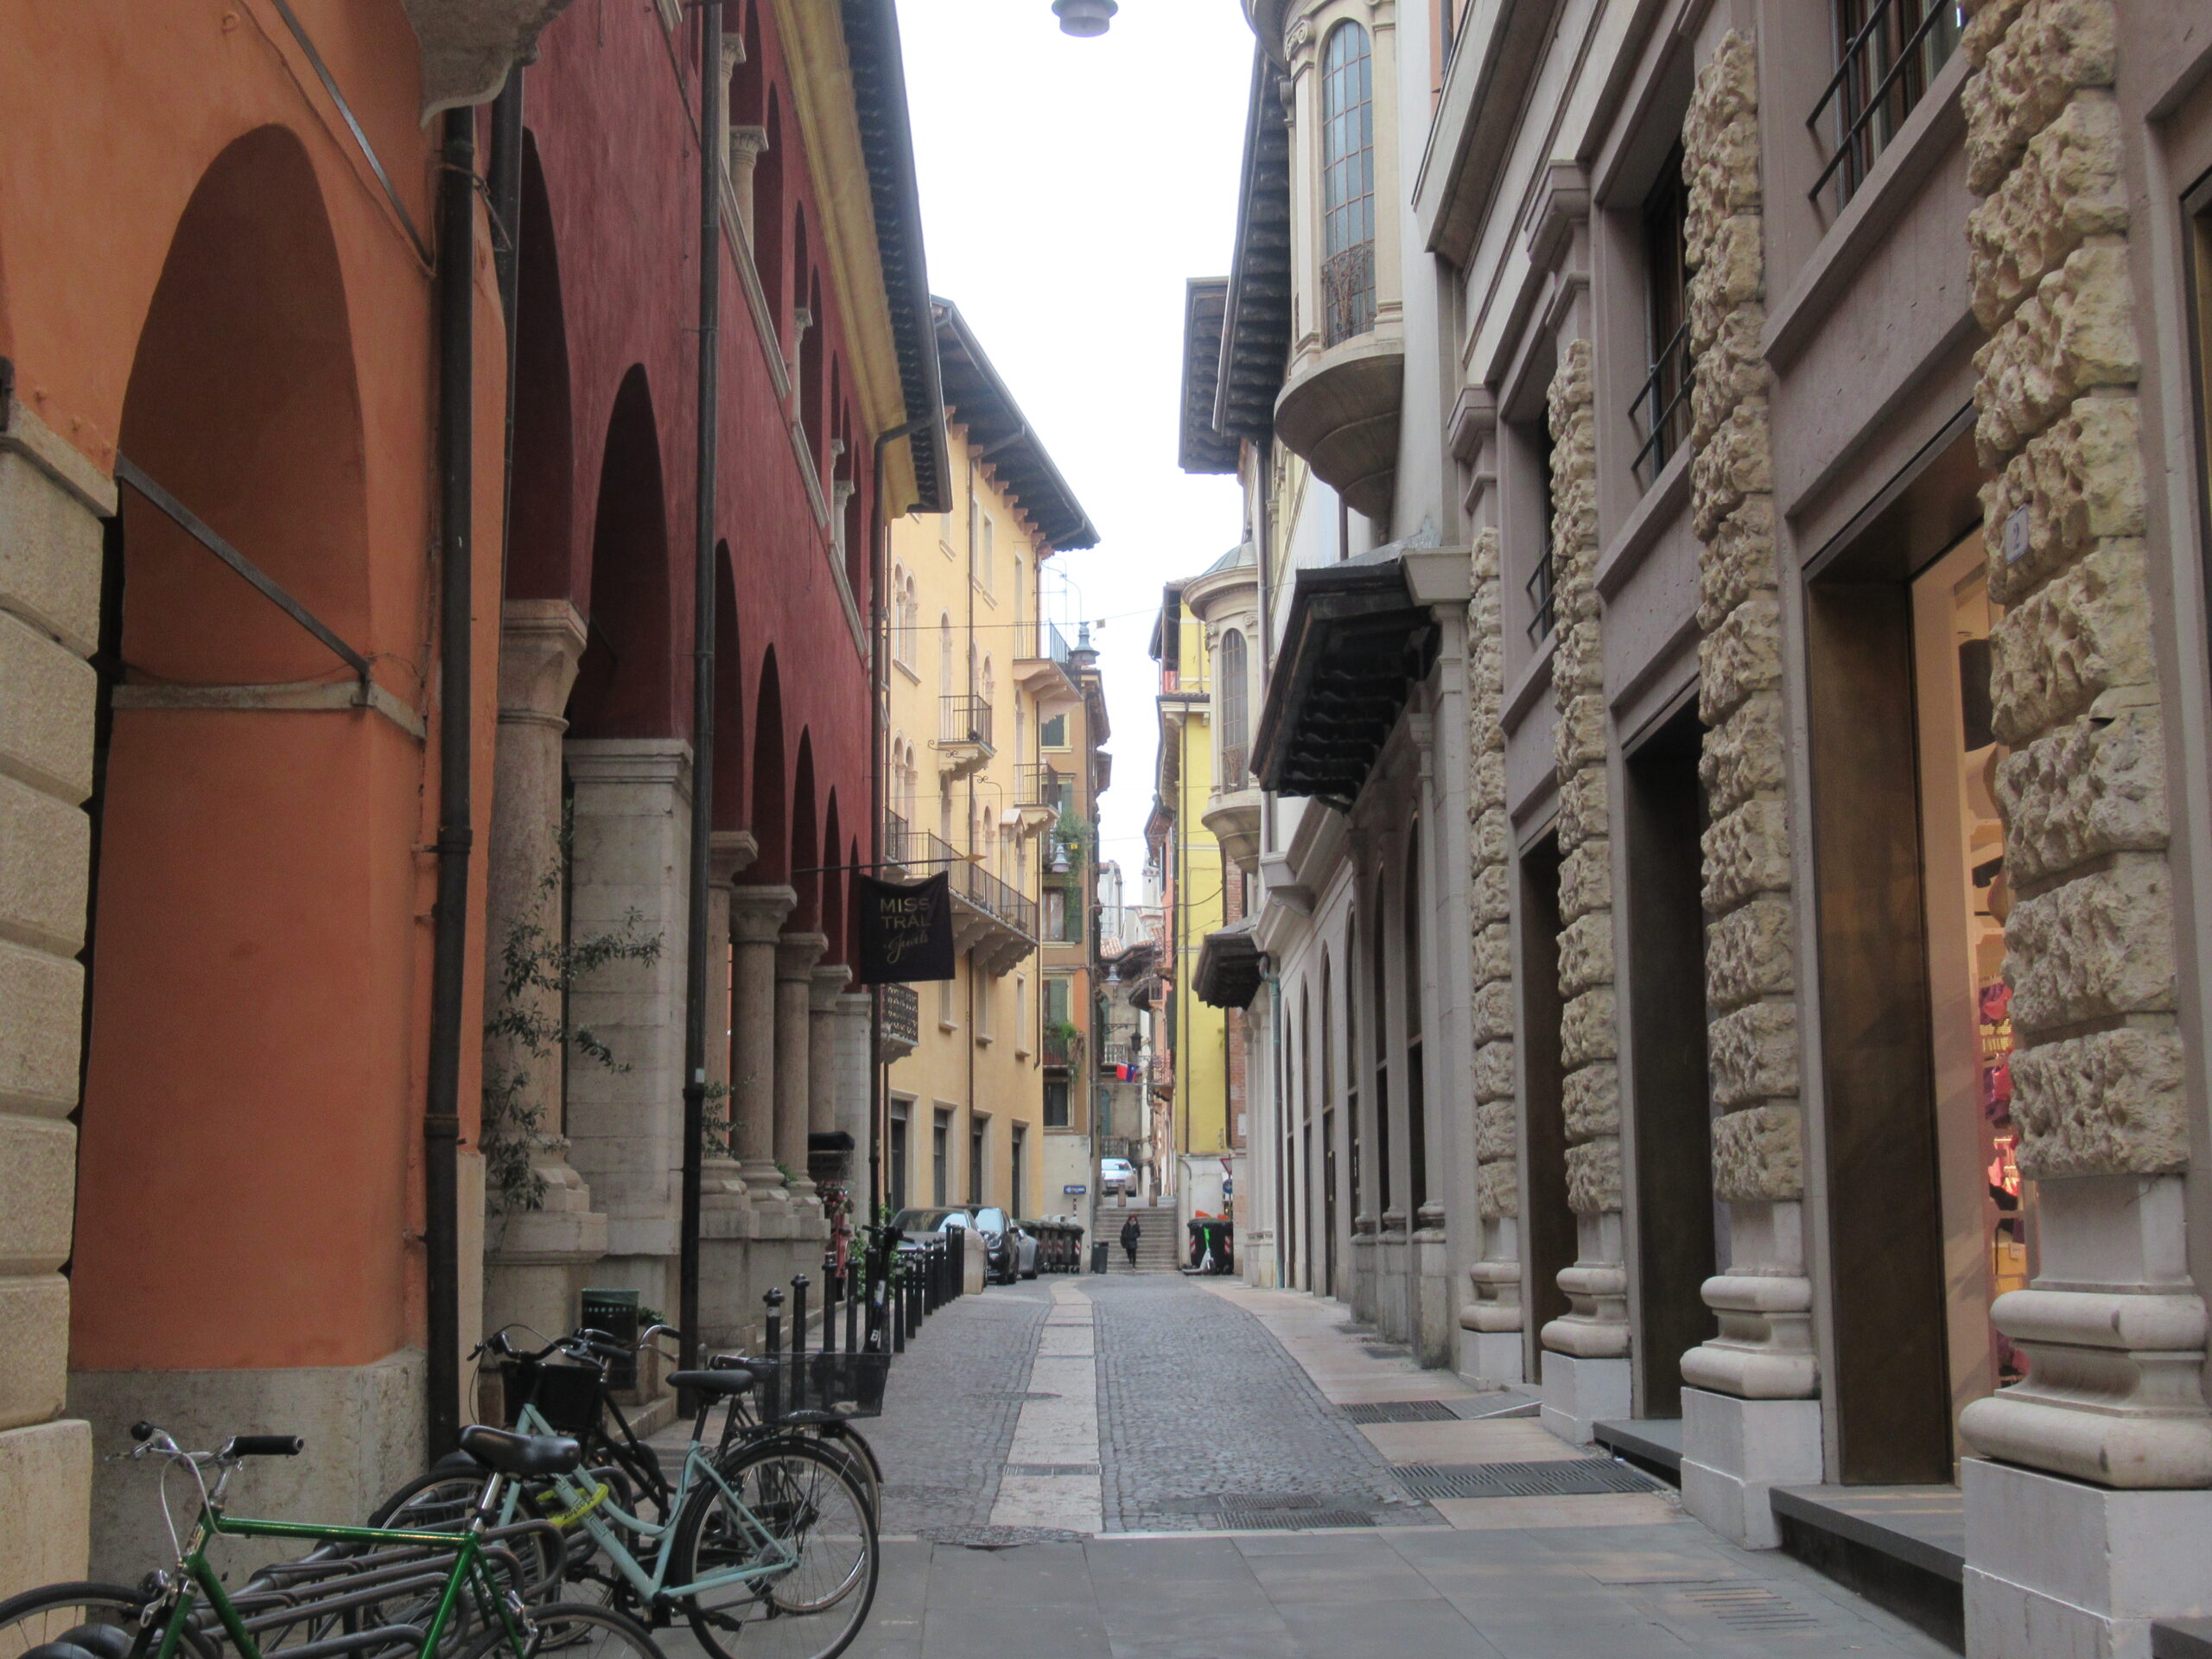 Weiterer Eindruck aus der Innenstadt von Verona